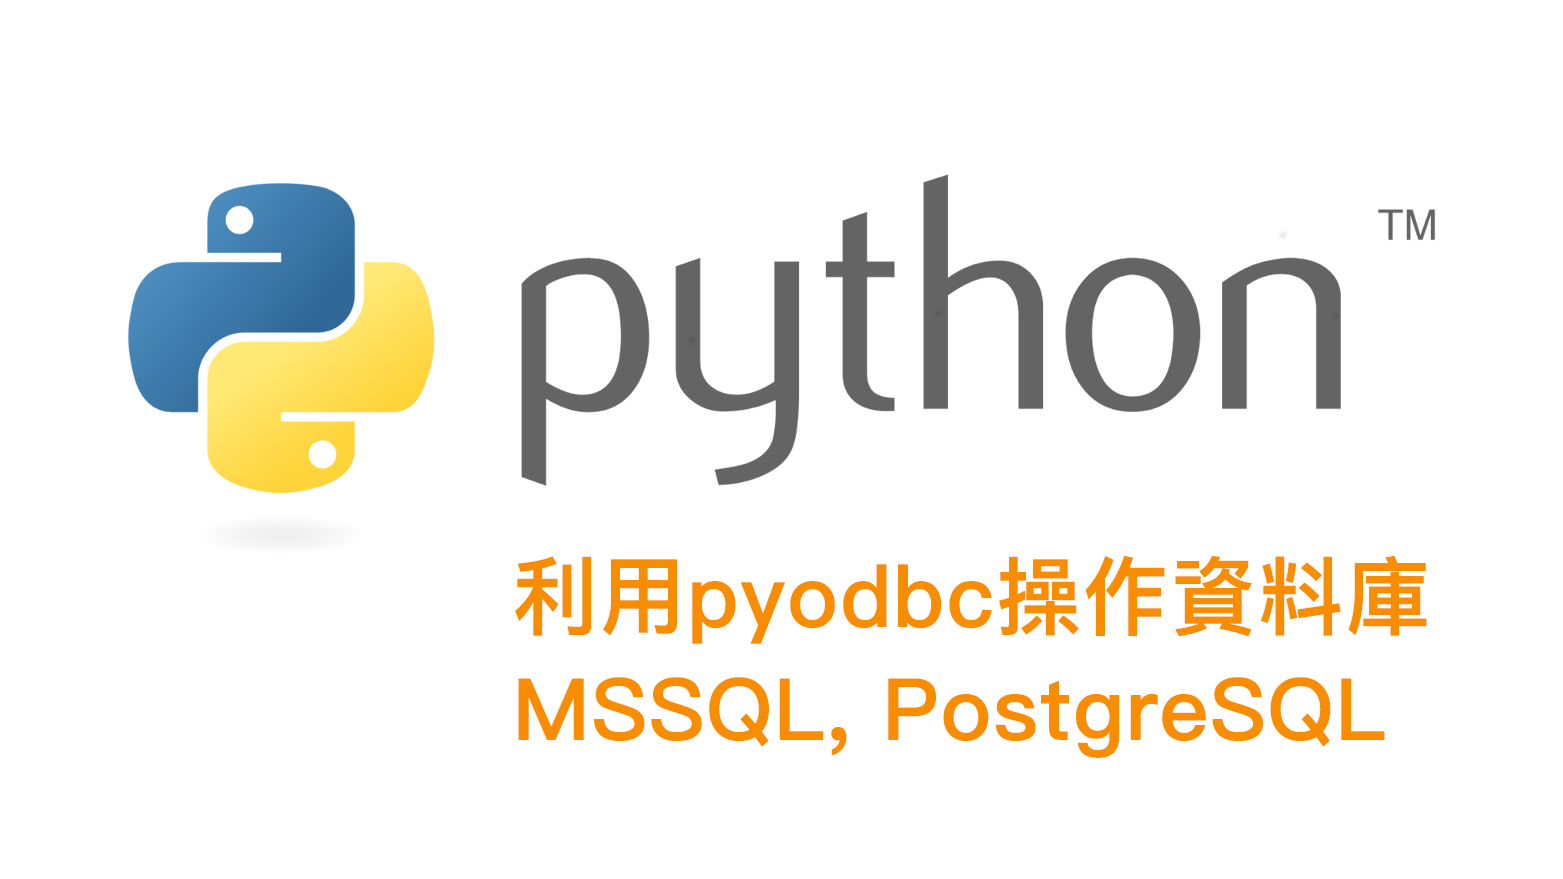 [python] pyodbc with MSSQL/postgreSQL